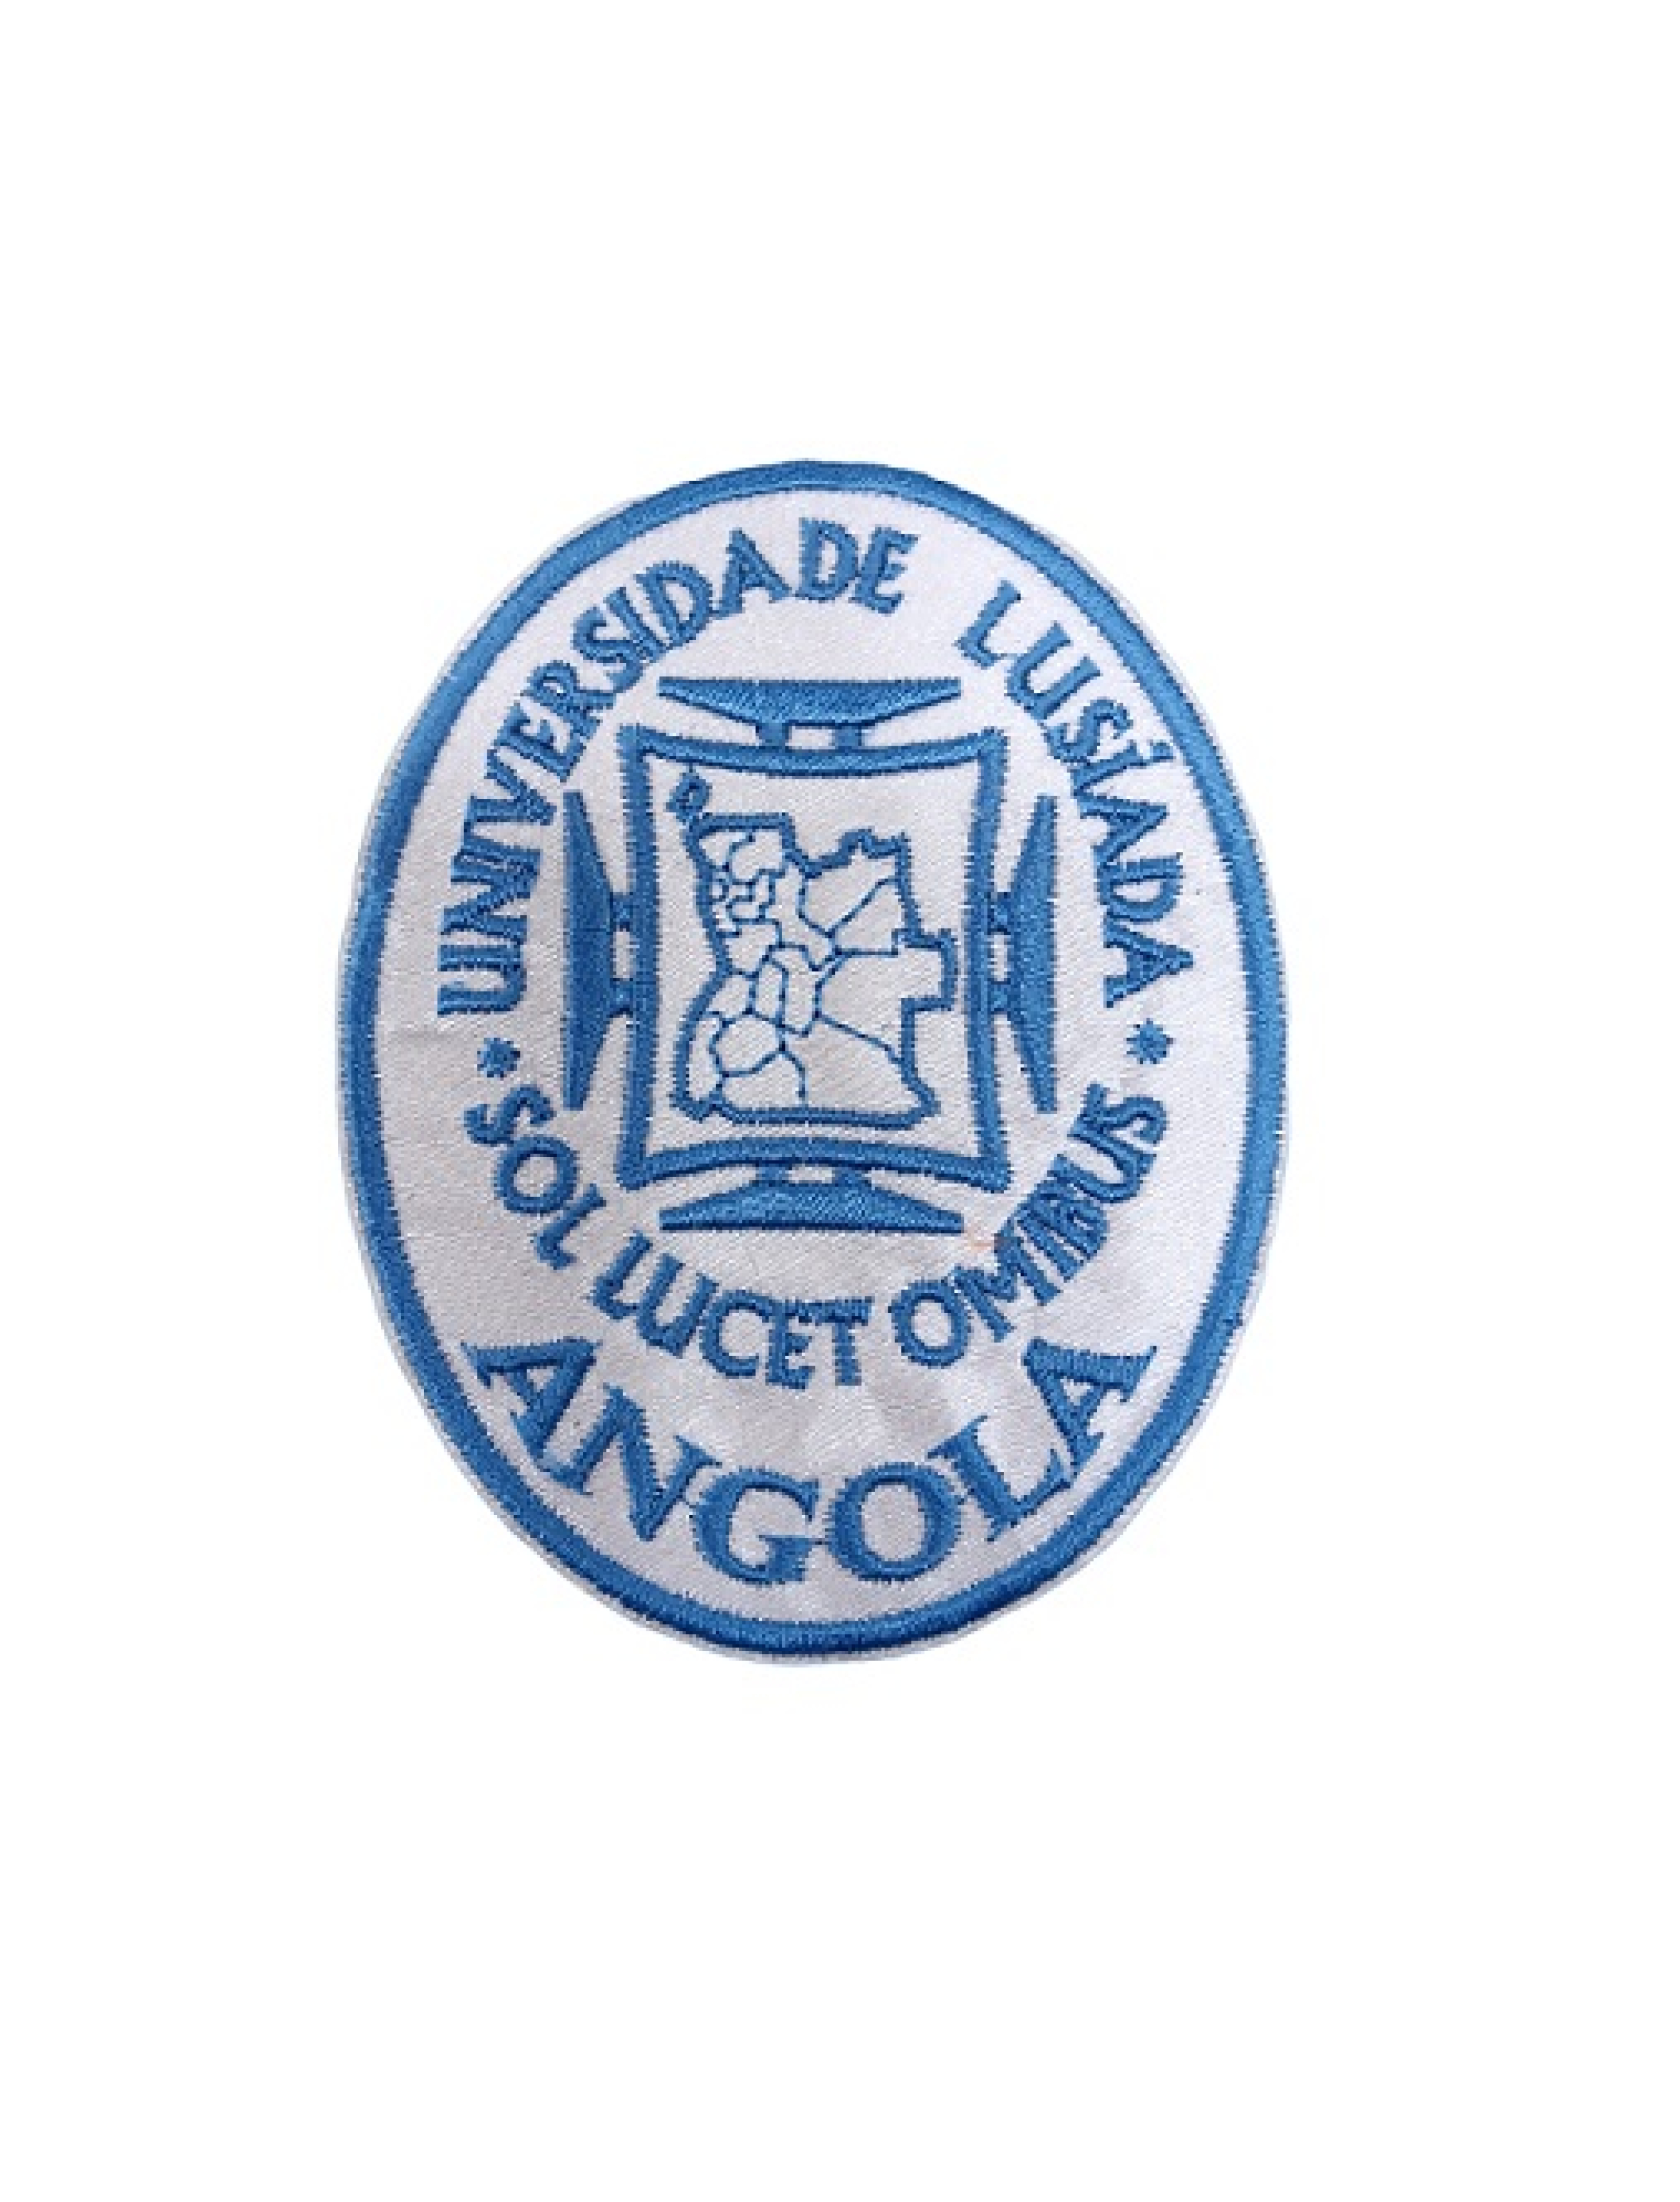 Angola - Universidade Lusíada